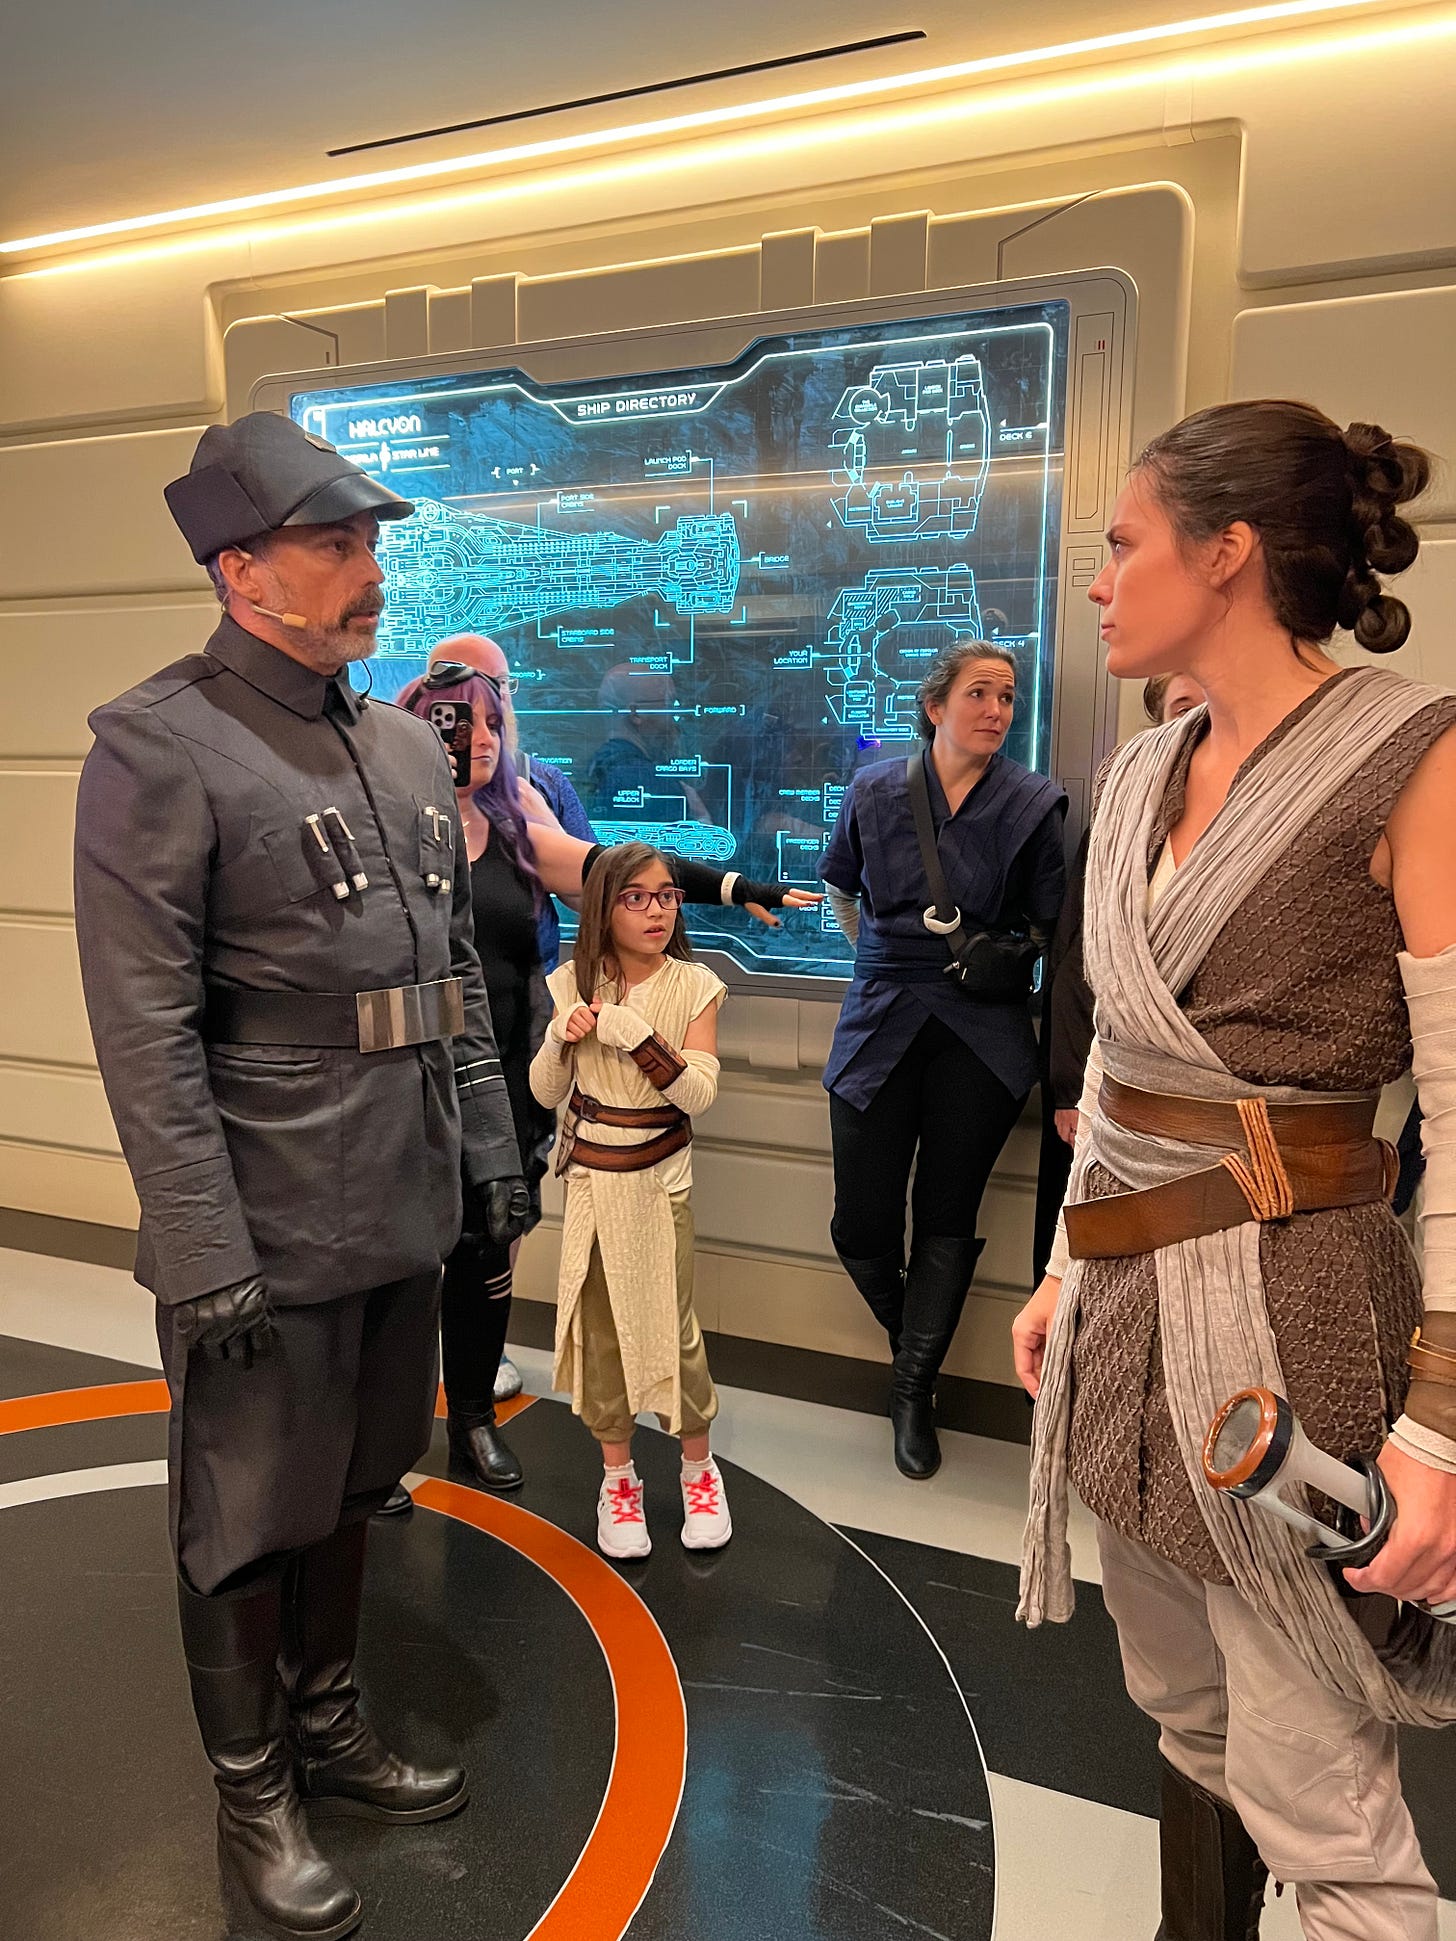 Rey confronting Croy in a corridor